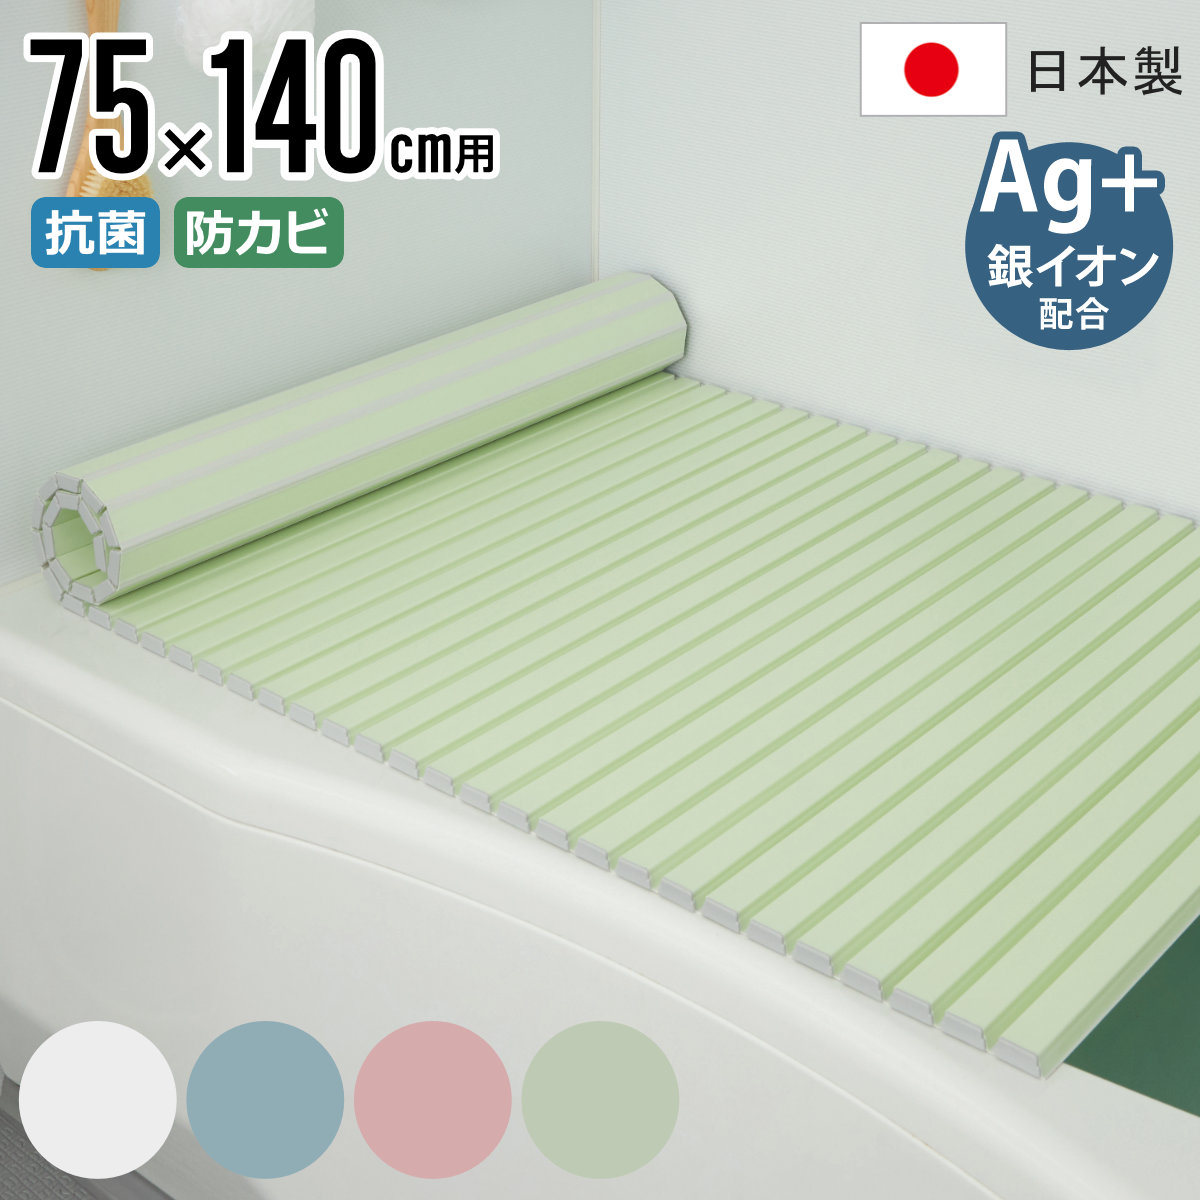 風呂ふた シャッター Ag抗菌 日本製 75×140cm 用 L-14 実寸75×142.5cm